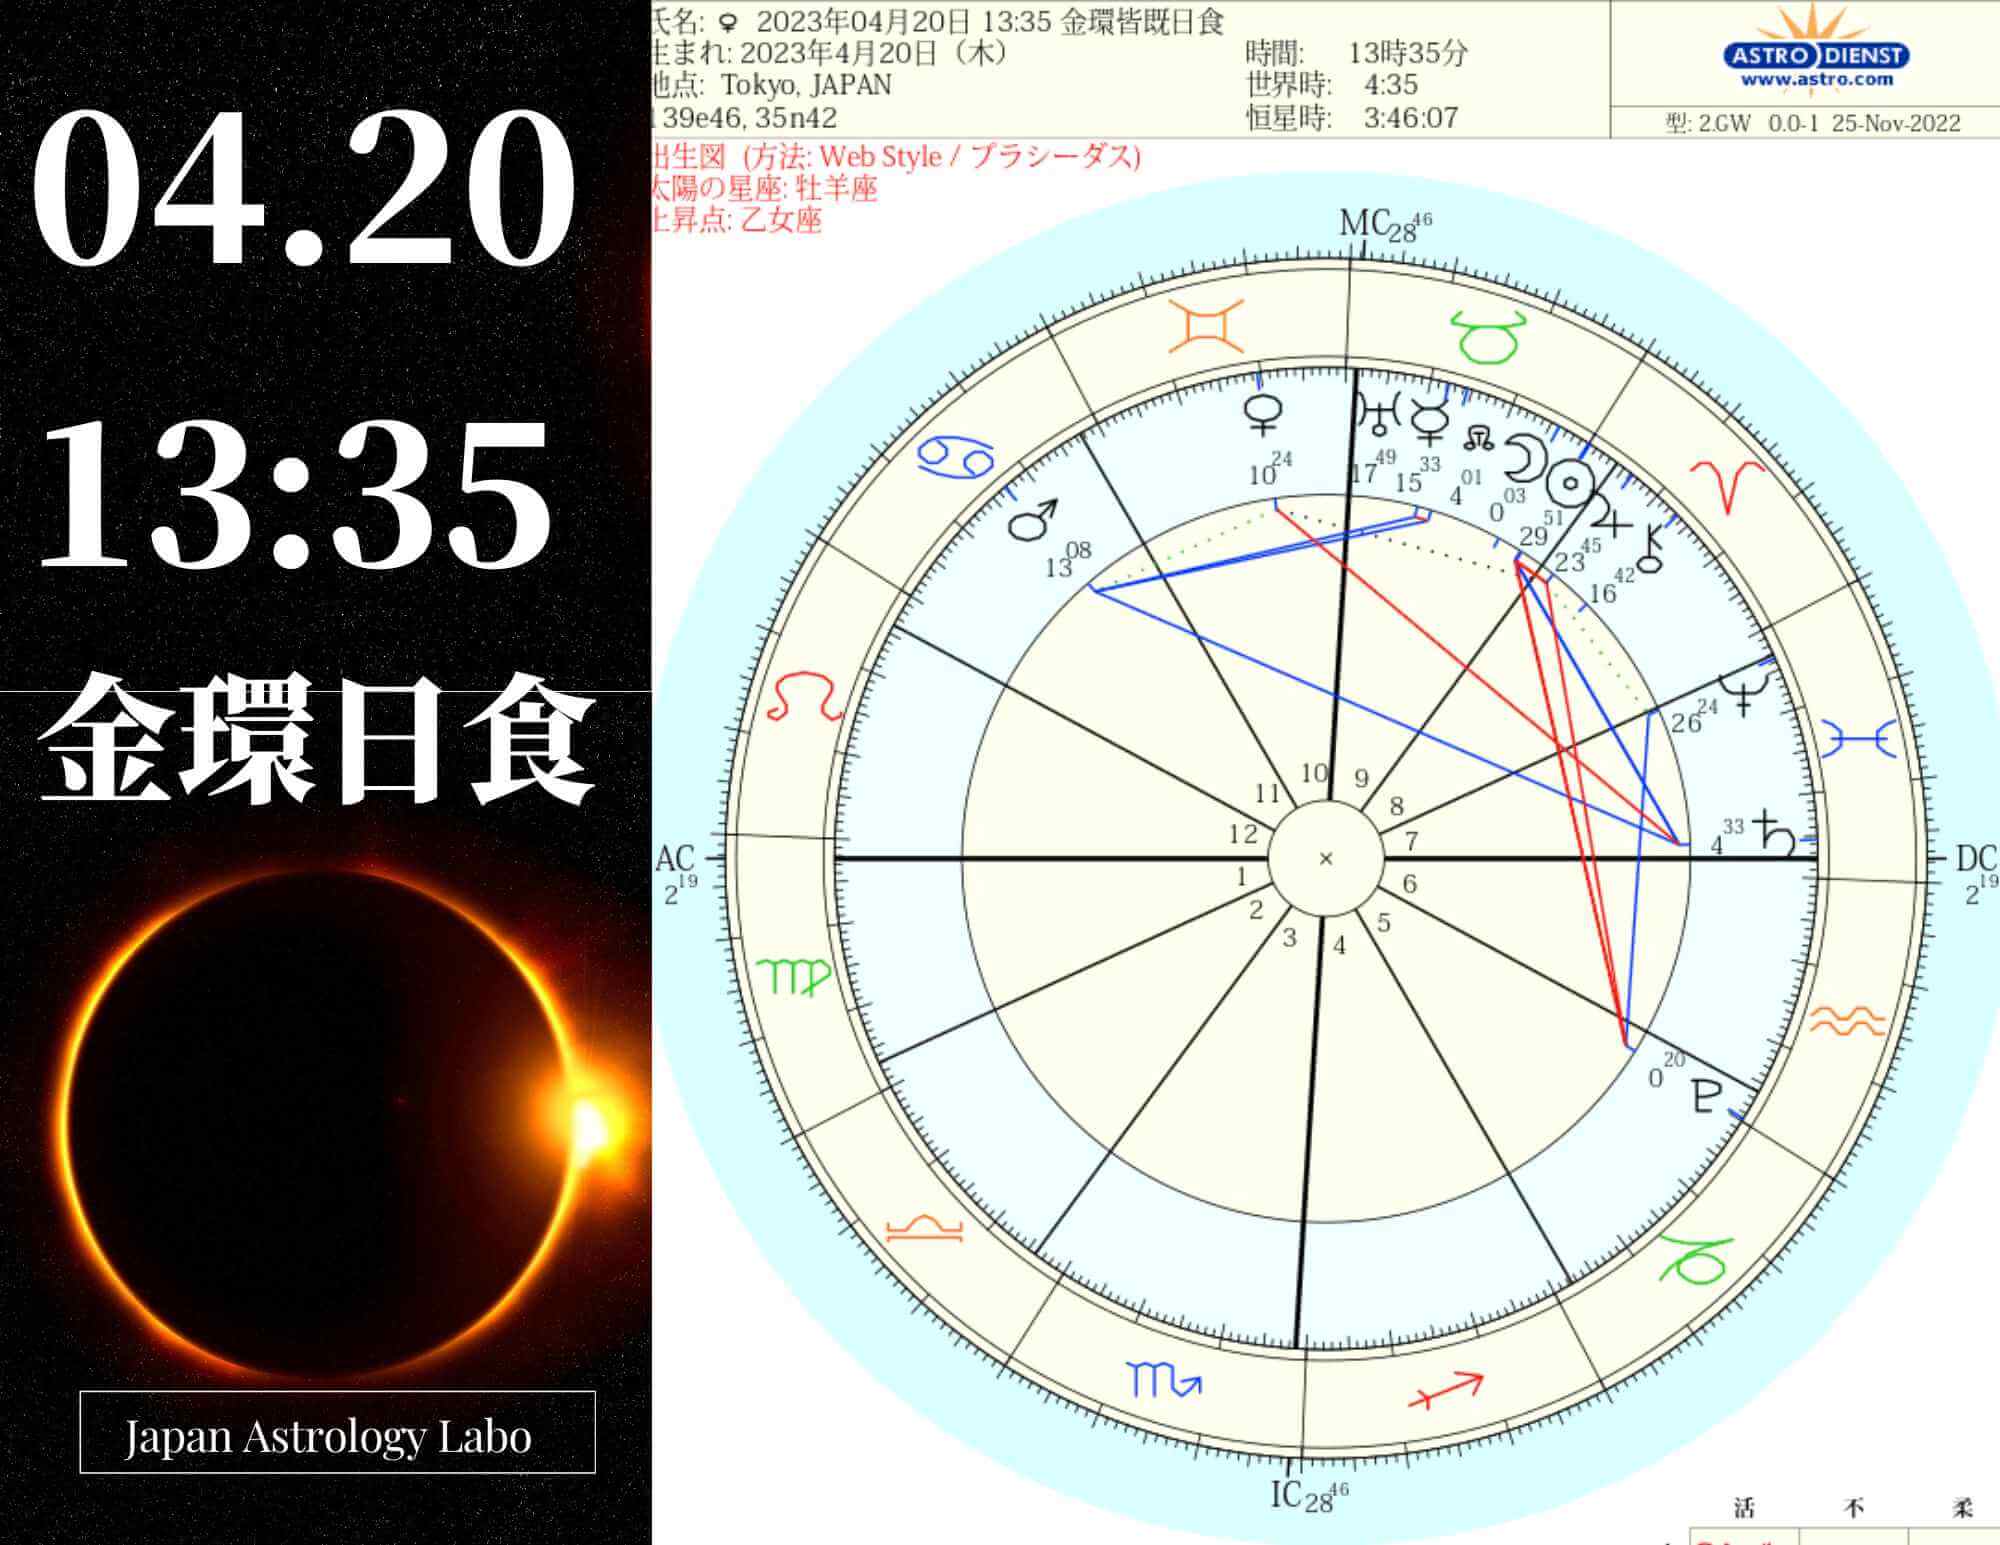 2023年04月20日 1335 金環皆既日食（ハイブリッド日食・日本では一部でごく浅い部分日食が見られる）